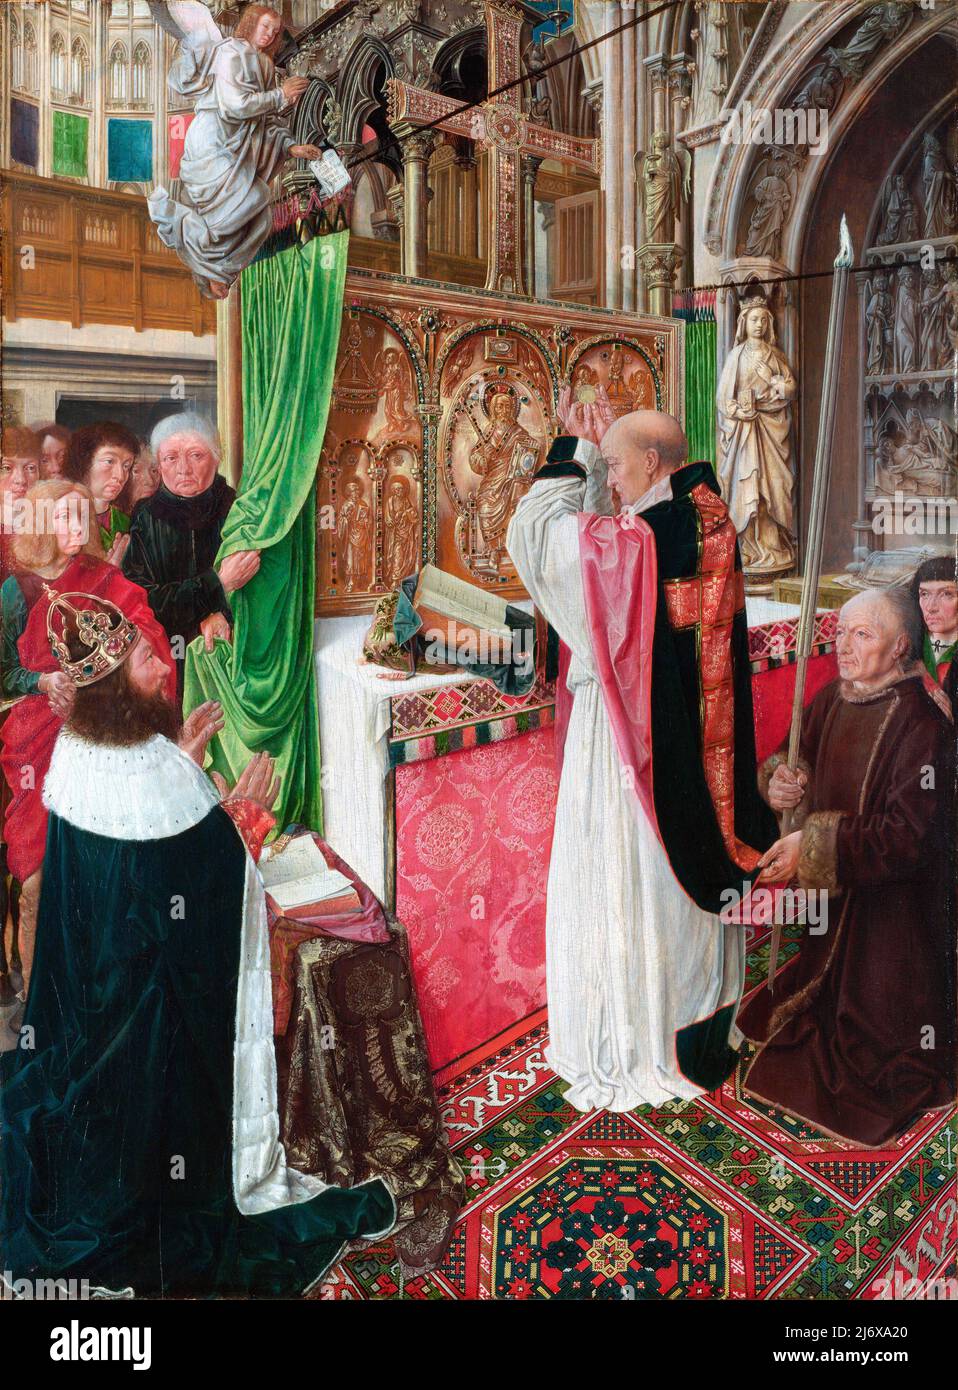 La messe de Saint Giles par le Maître de Saint Giles, huile sur chêne, c. 1500. Charlemagne, empereur romain Saint, s'agenouille à côté d'un autel où un prêtre exécute la messe. Banque D'Images